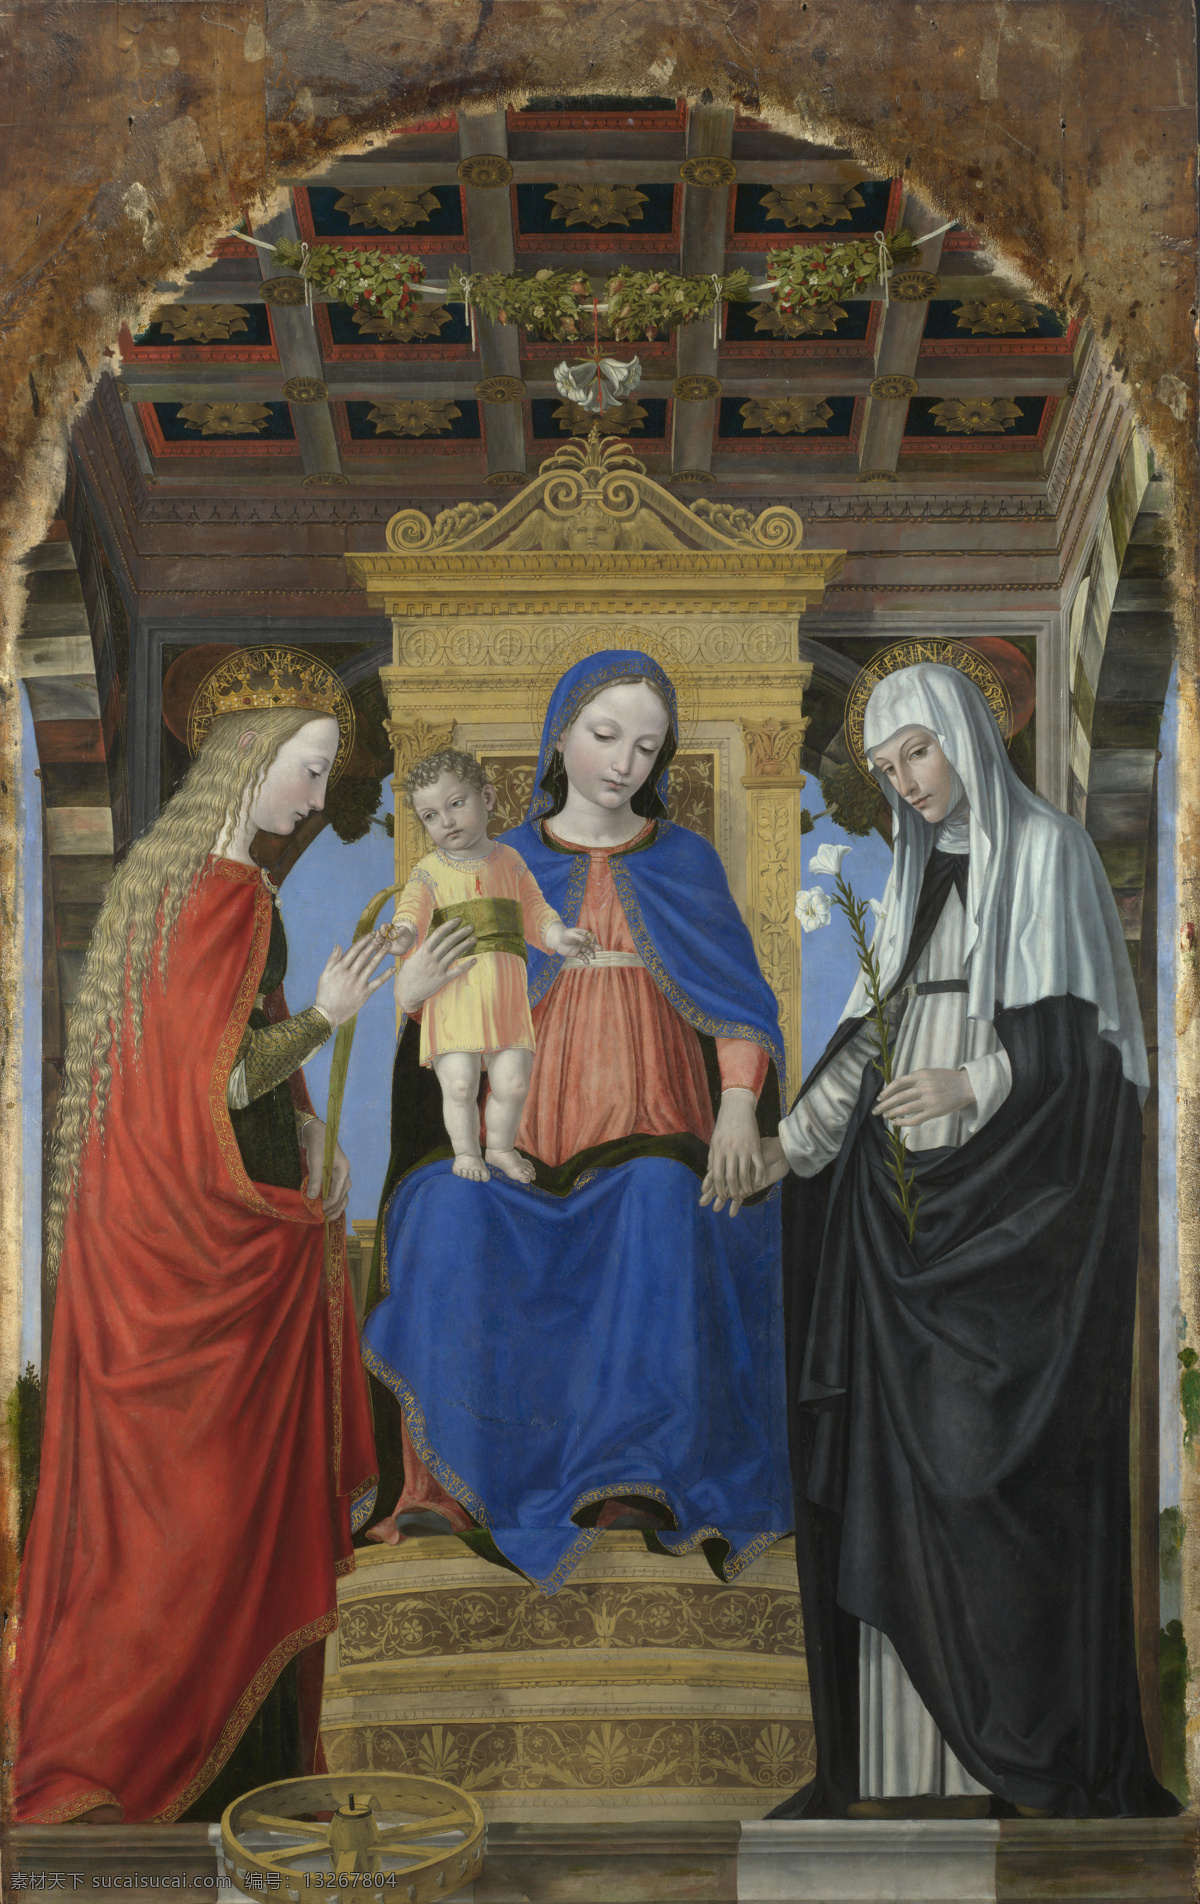 圣母 耶稣 世界名画 油画 西方油画 西方文化 绘画艺术 基督教 宗教绘画 圣母玛利亚 书画文字 文化艺术